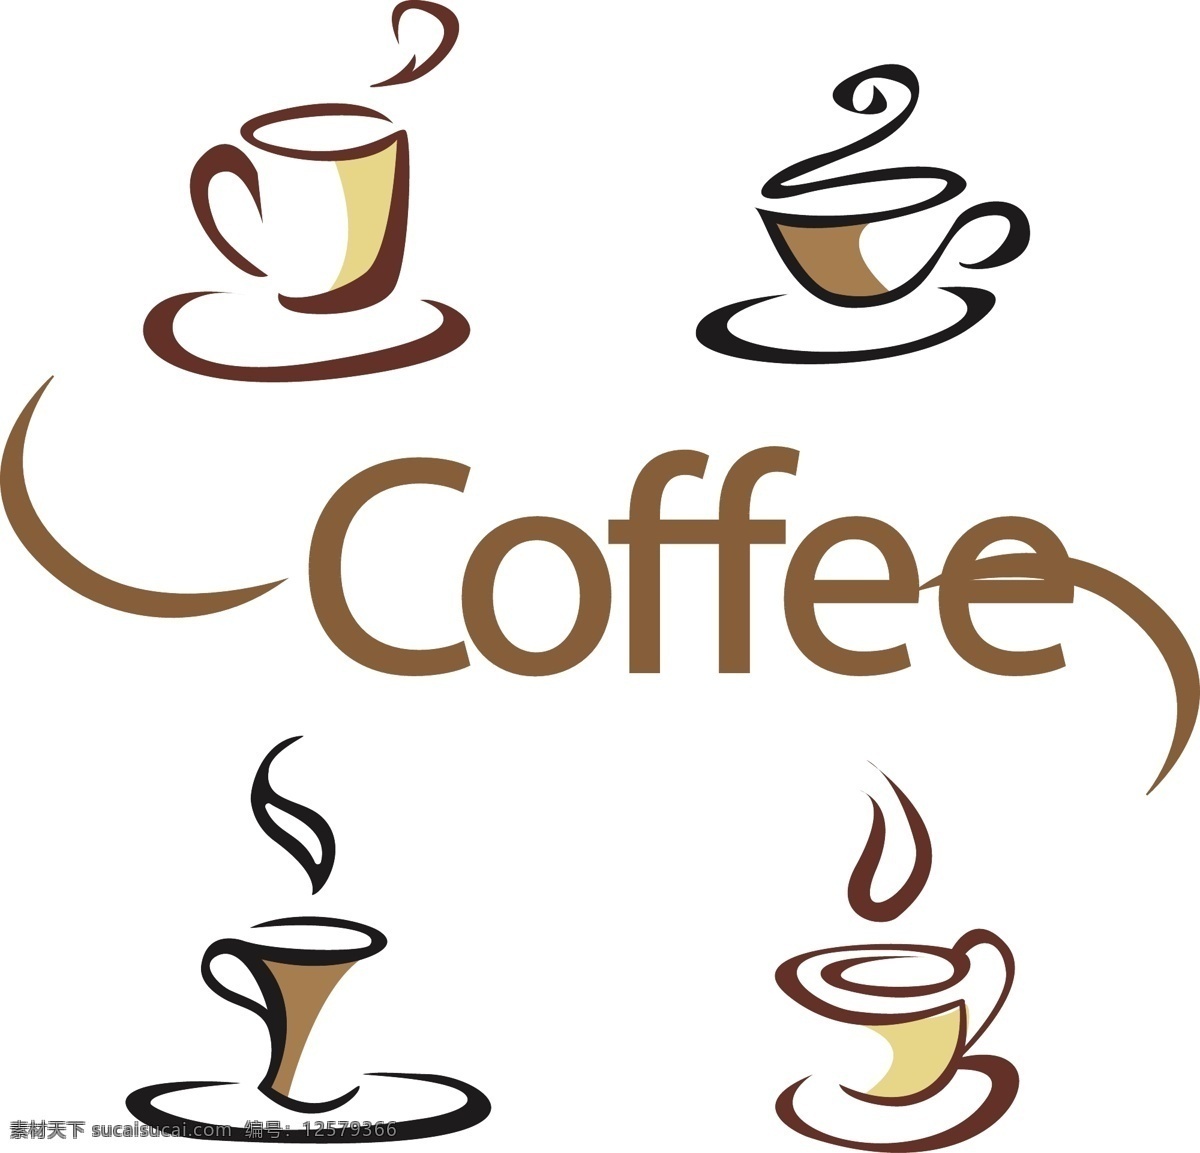 咖啡杯 商标 logo 模板 抽象 企业商标 logo模板